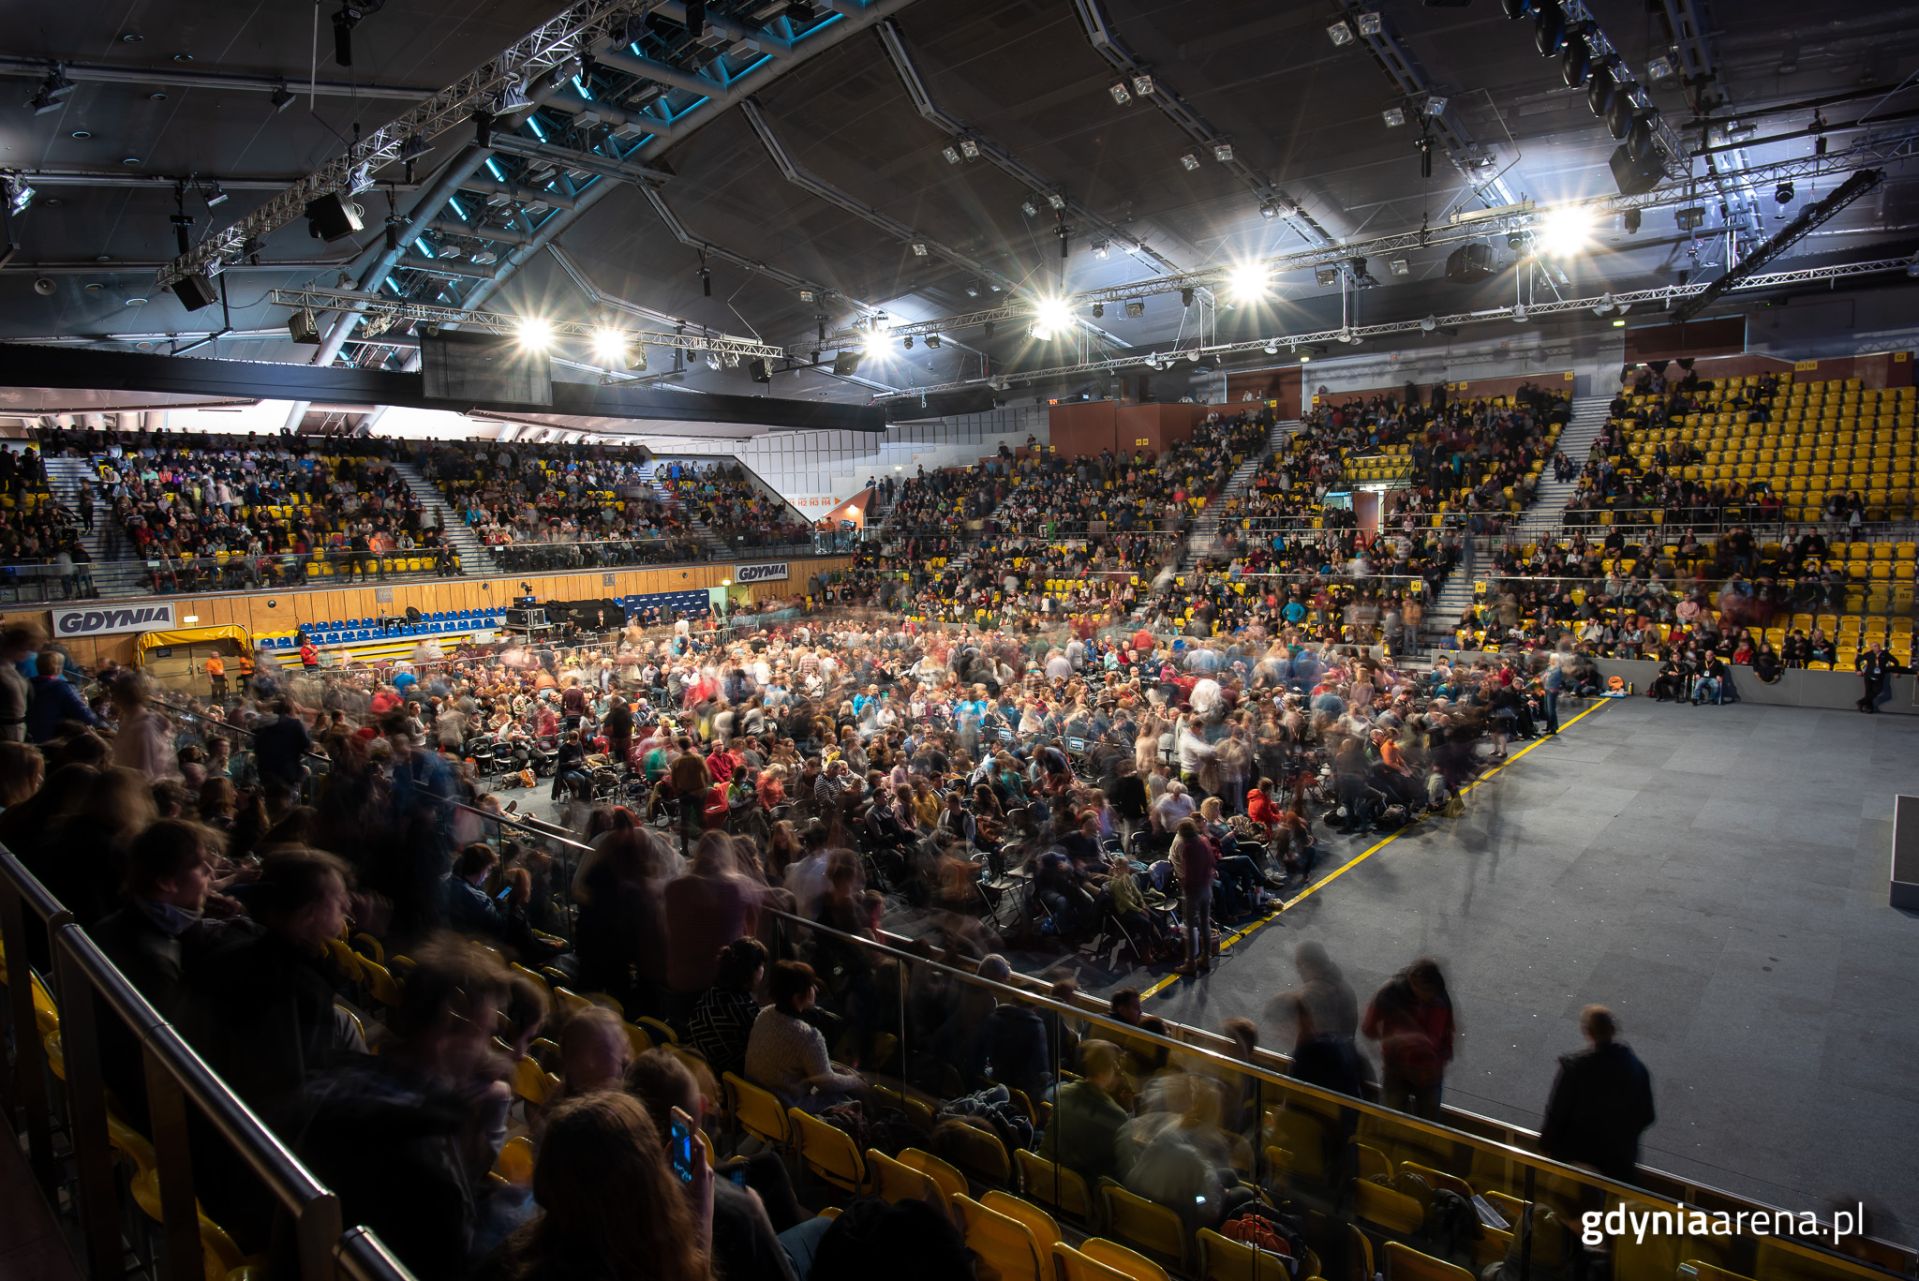 Polsat Plus Arena Gdynia pełna ludzi 